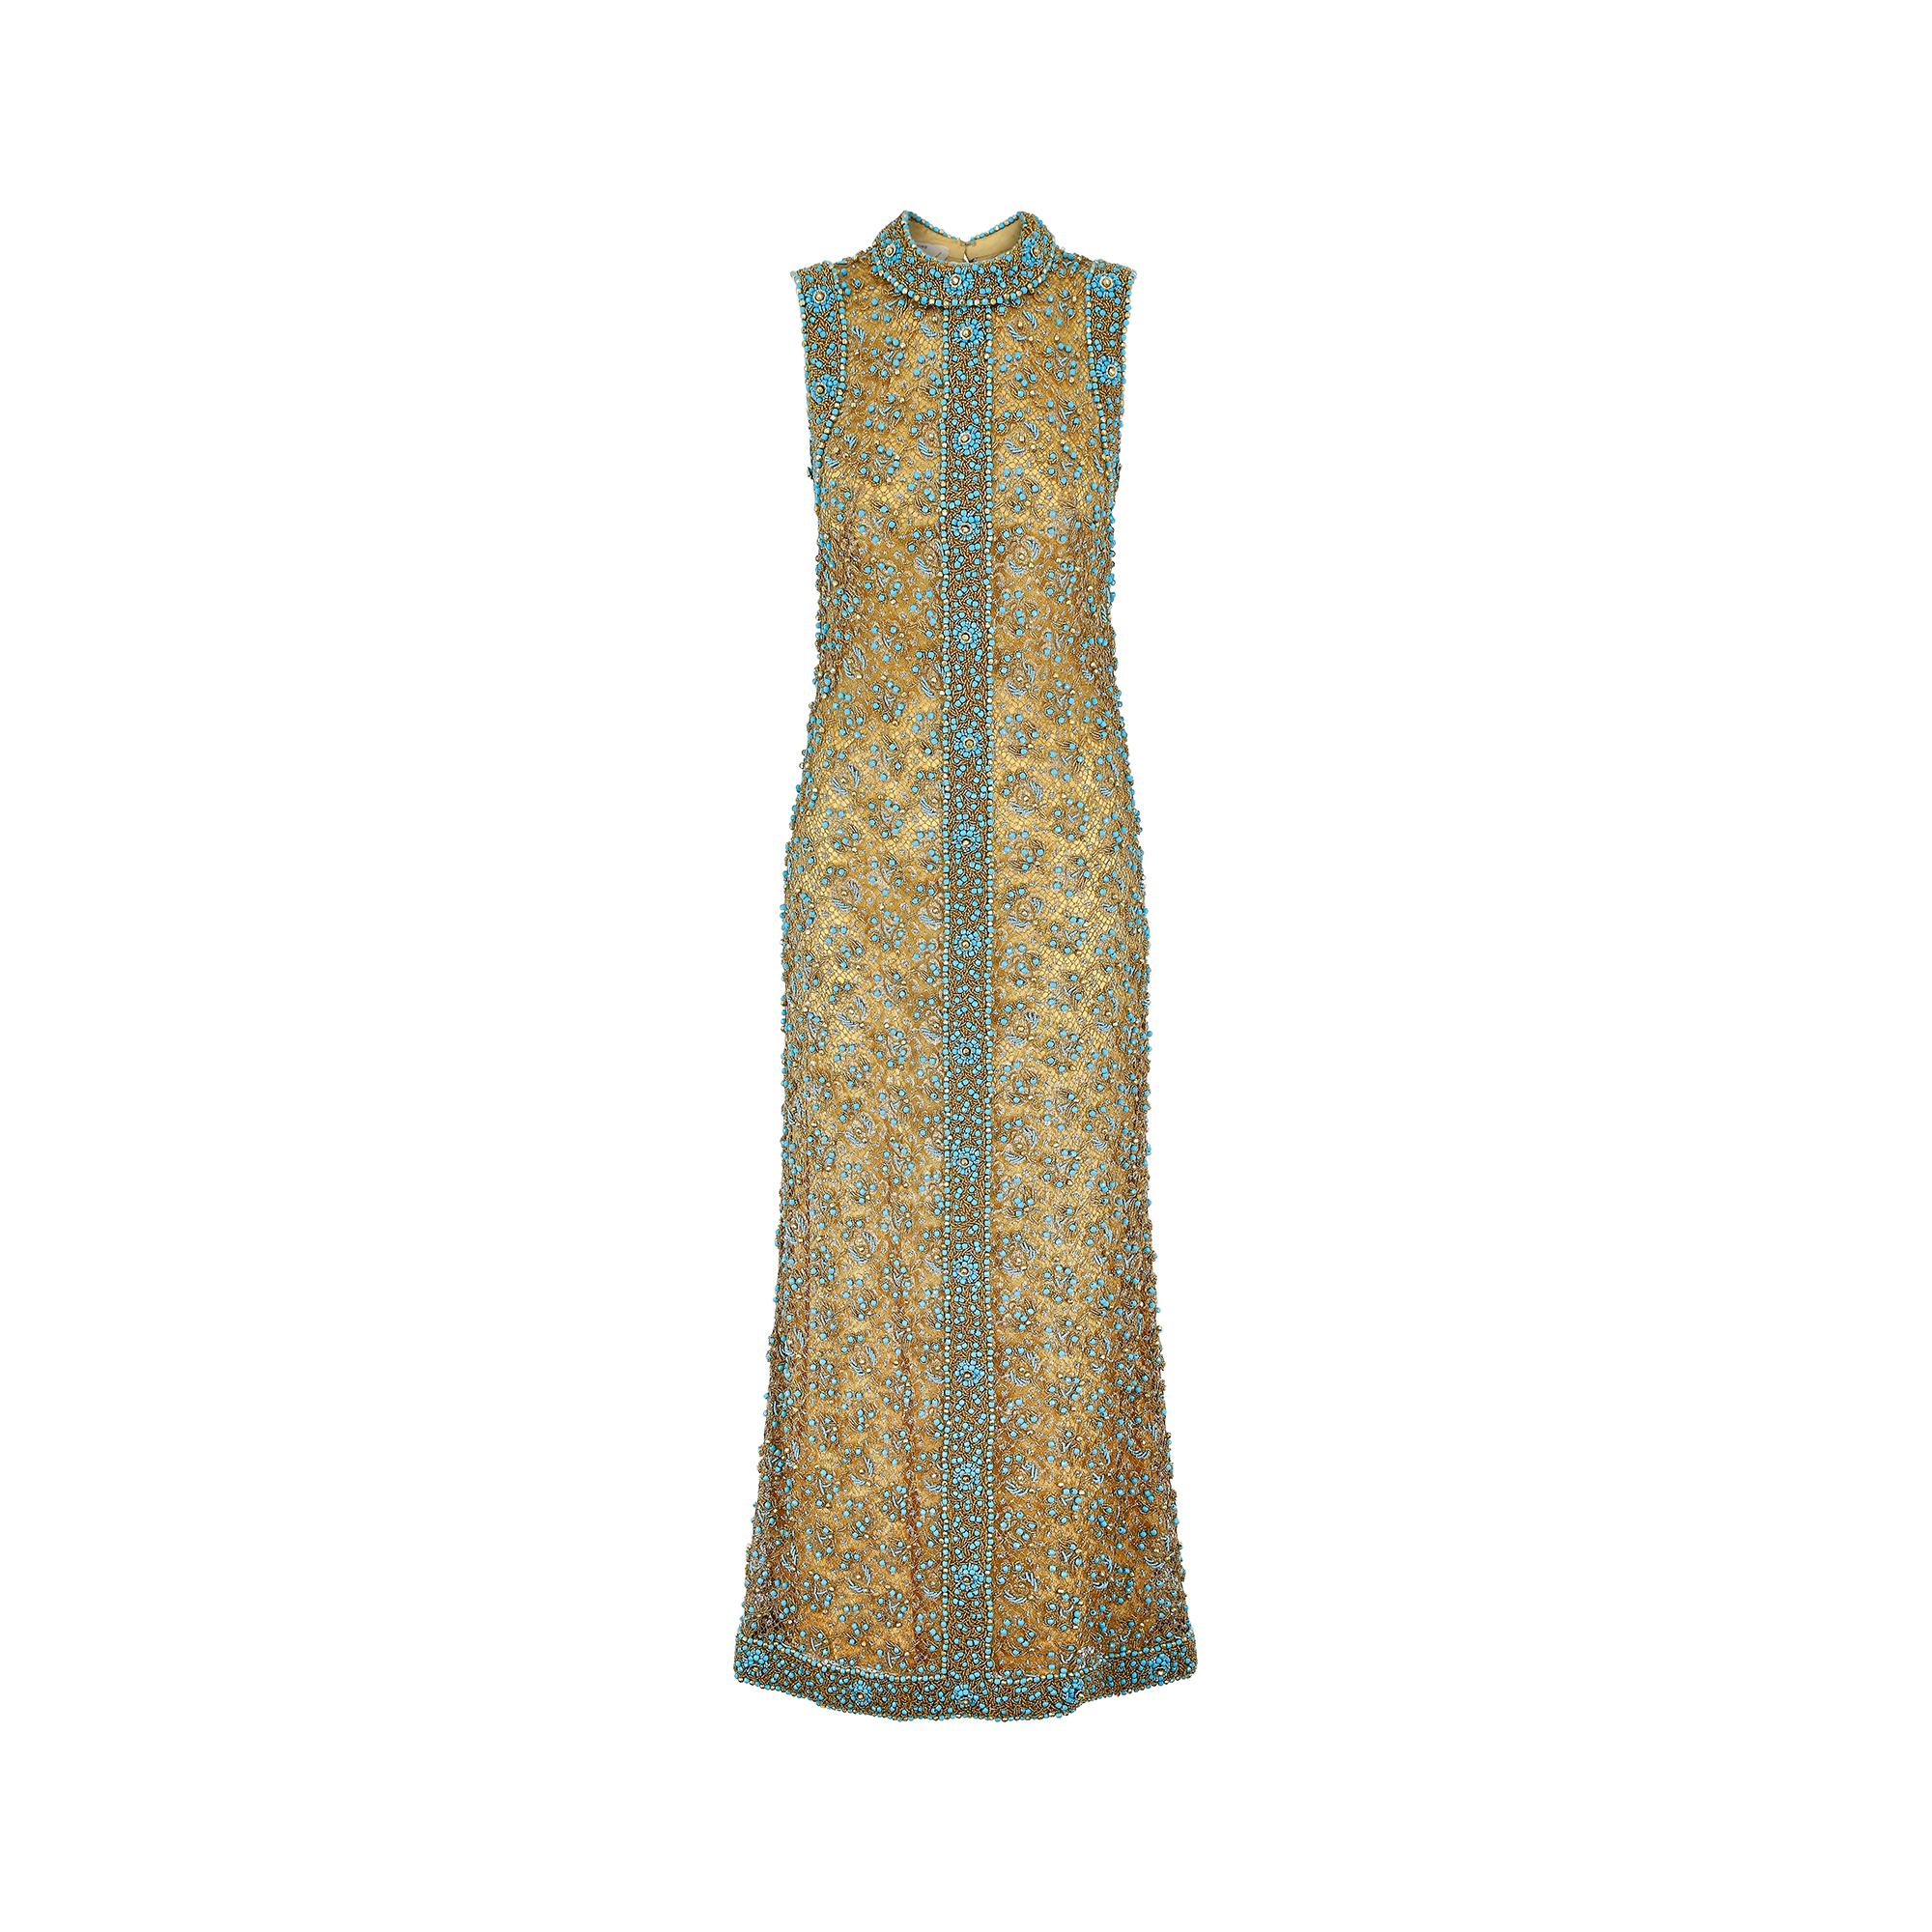 Dieses exquisite Kleid von Doreen Lok aus den 1960er Jahren in Gold und Türkis ist die perfekte Wahl für einen ganz besonderen Anlass. Ein absoluter Hingucker, der in dieser Detailgenauigkeit nur selten in einem so makellosen Vintage-Zustand zu